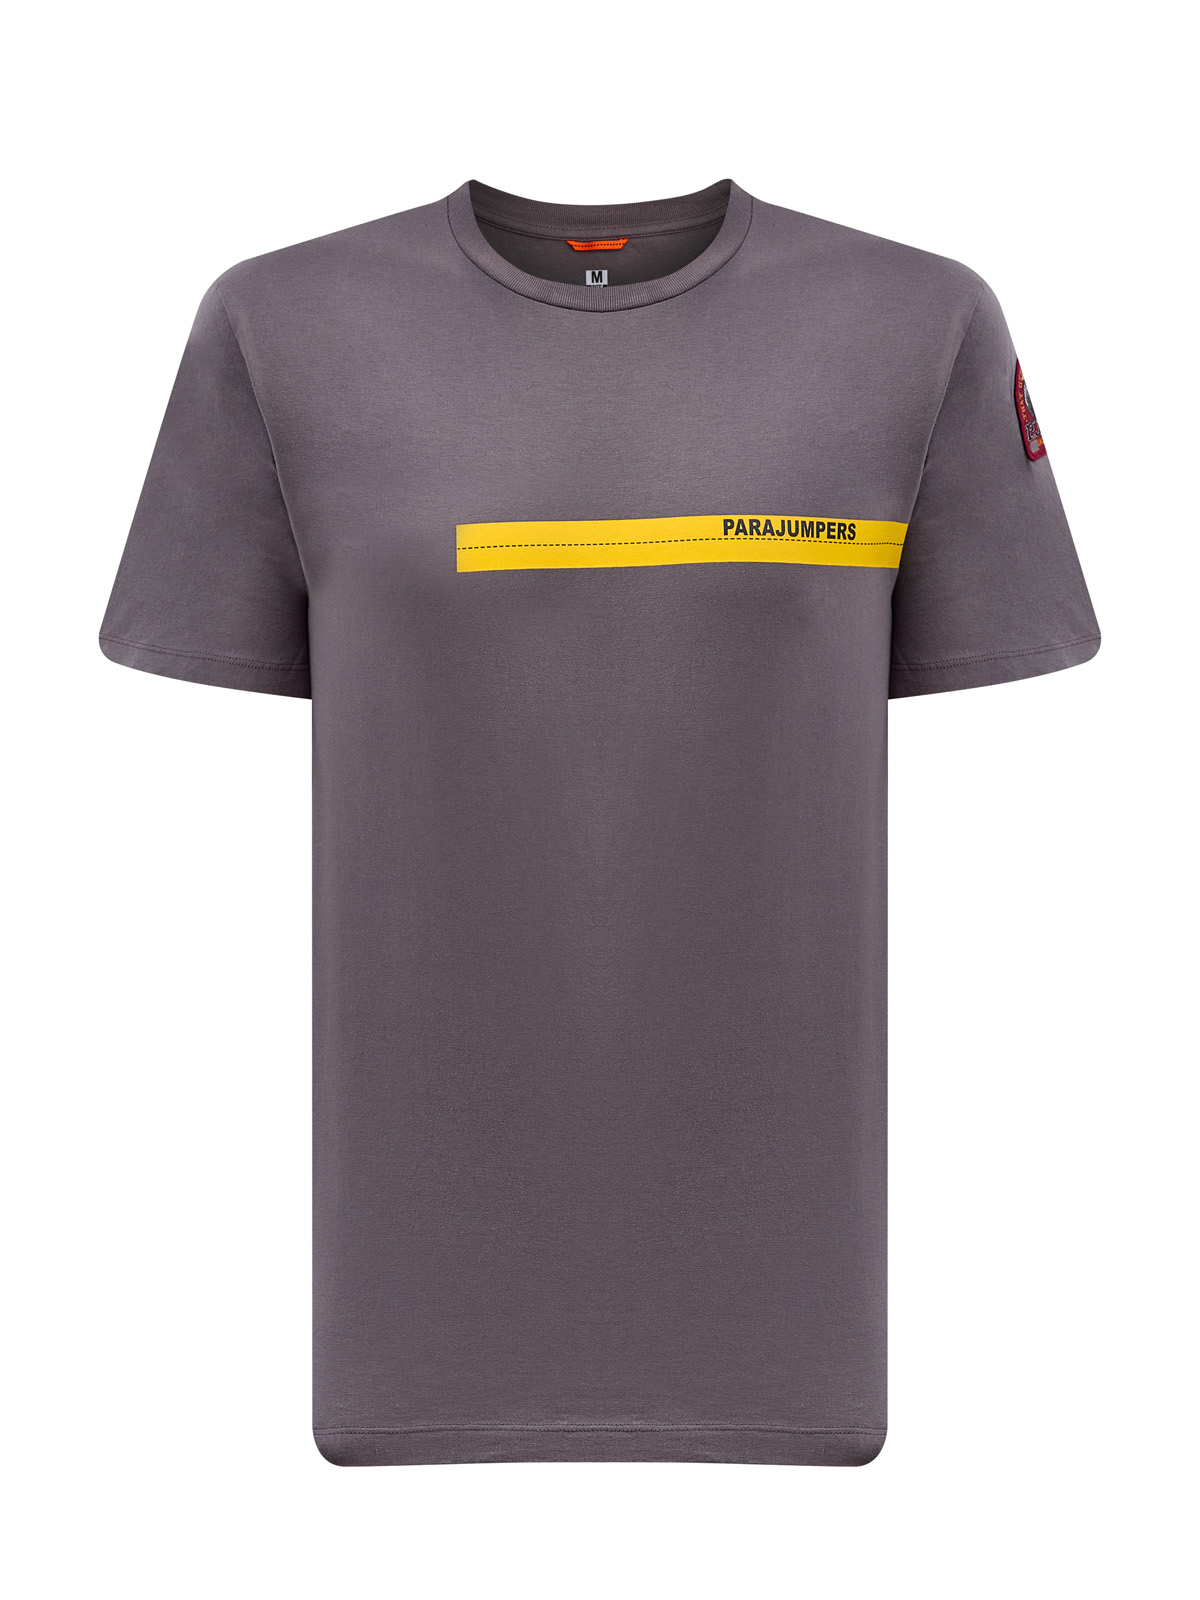 Хлопковая футболка Tape Tee с принтом и фирменной нашивкой PARAJUMPERS, цвет серый, размер M;L;XL - фото 1